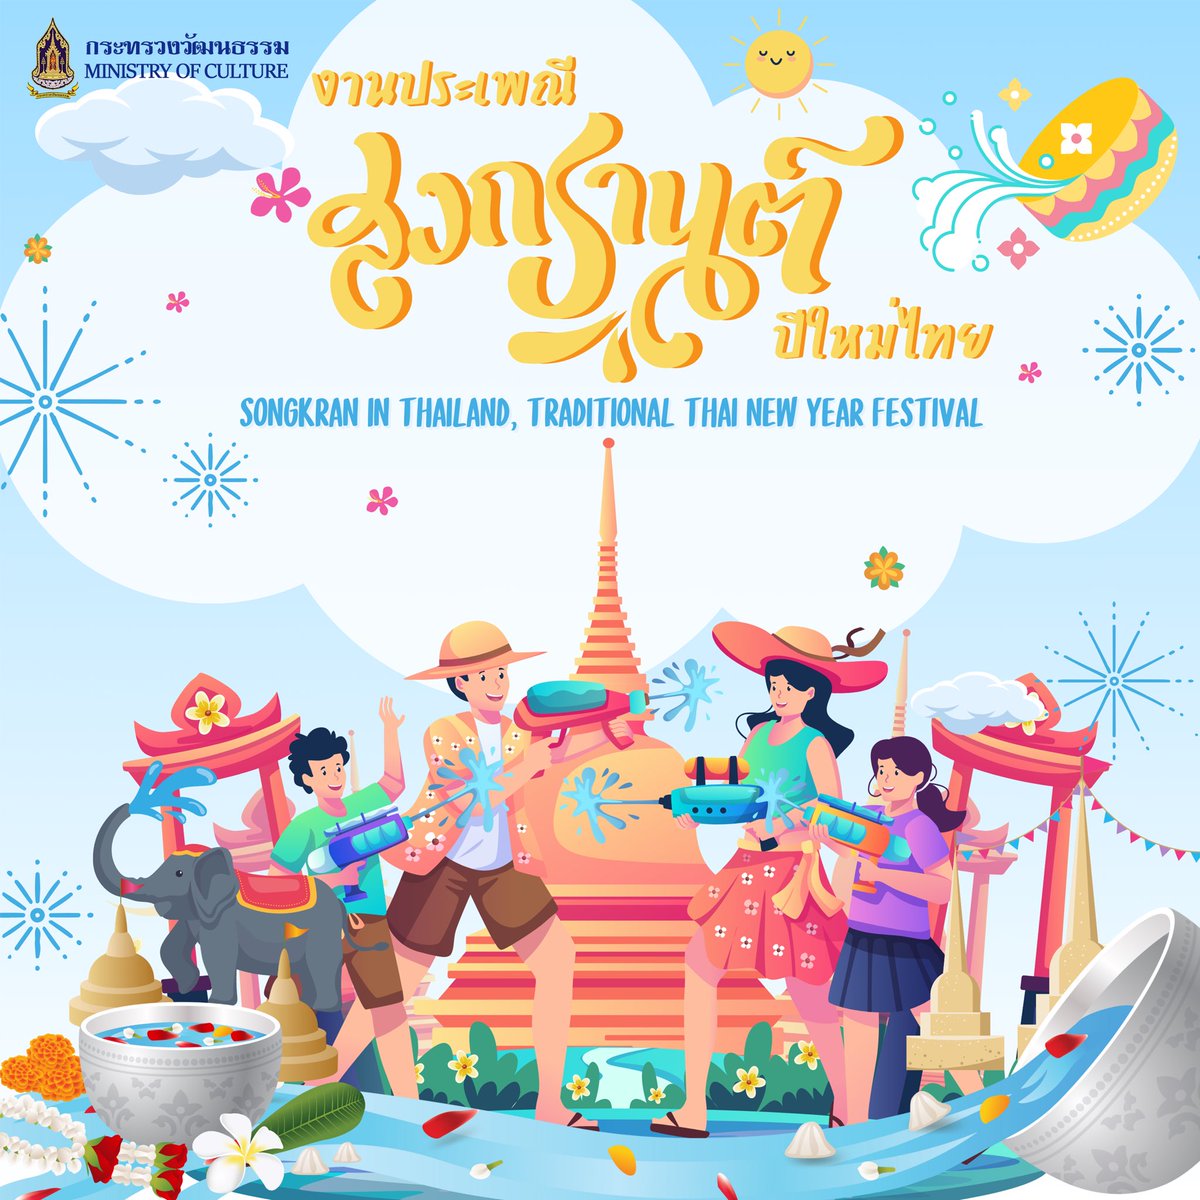 งานประเพณีสงกรานต์ปีใหม่ไทย (Songkran in Thailand, tradition Thai New Year Festival)